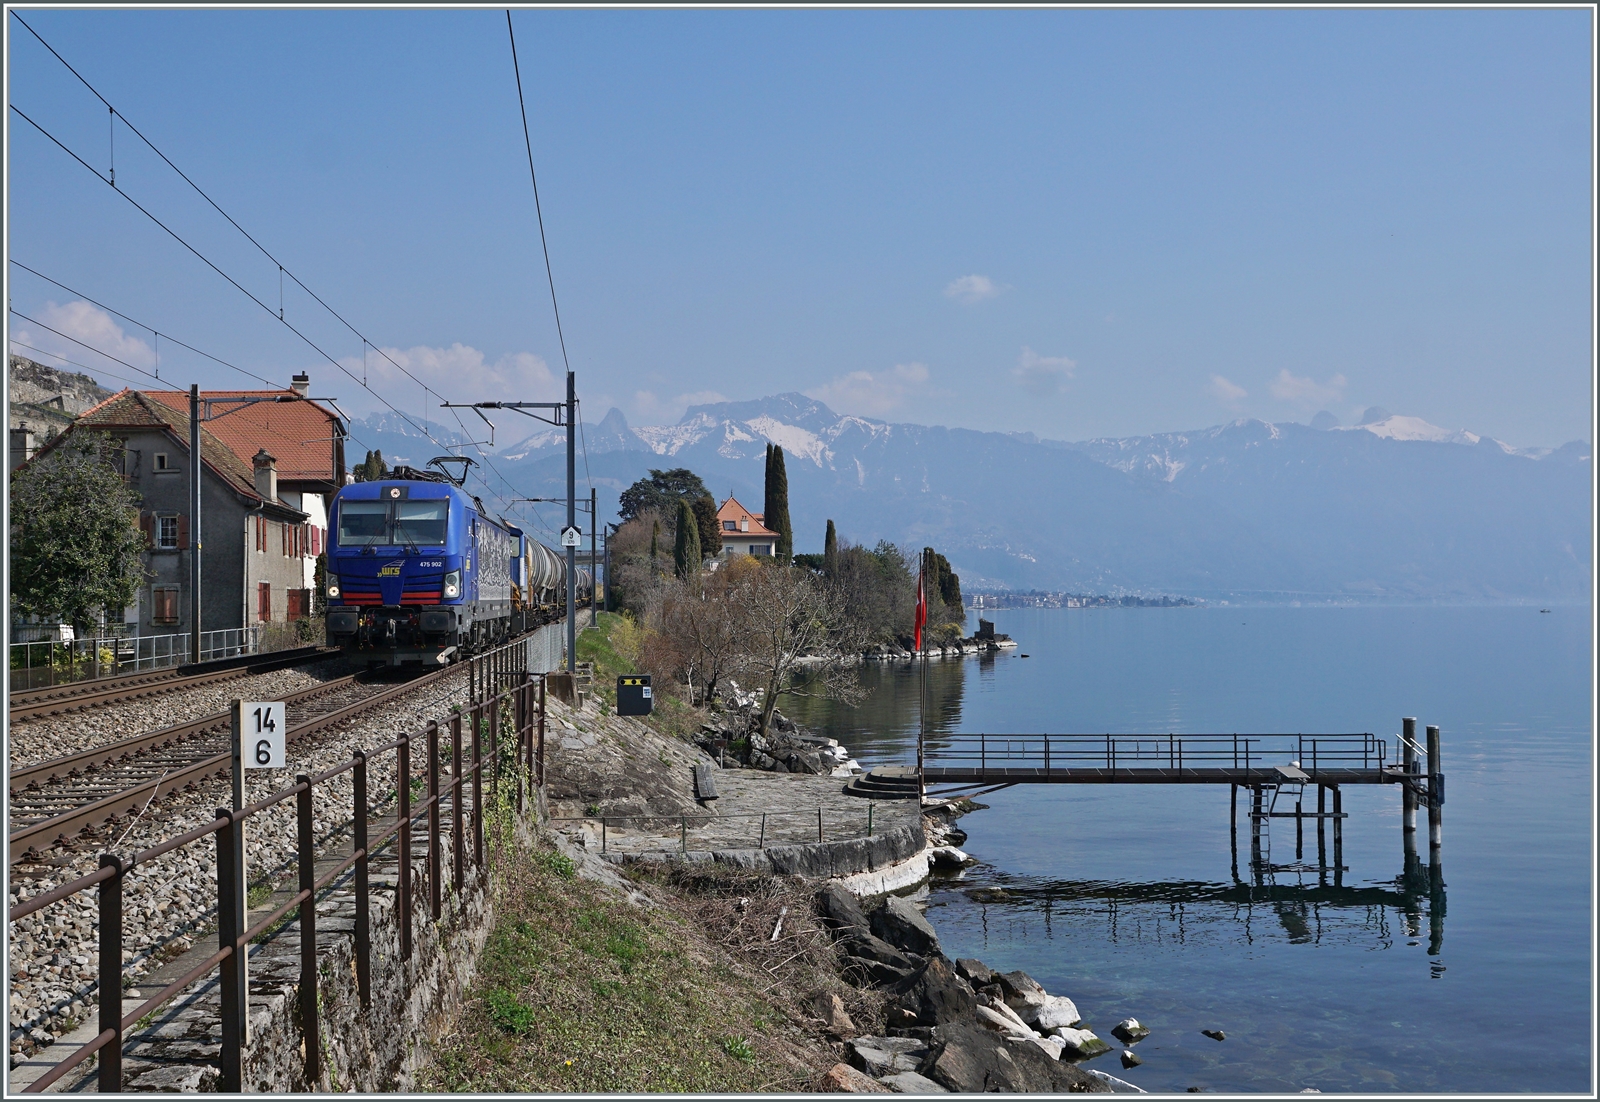 Die WRS Re 475 902 fährt mit einem Kesselwagenzug Richtung Lausanne bei St-Saphorin am Genfer See entlang. Das Bild entstand auf dem Bahnsteig von St-Saphorin.

25. März 2022 